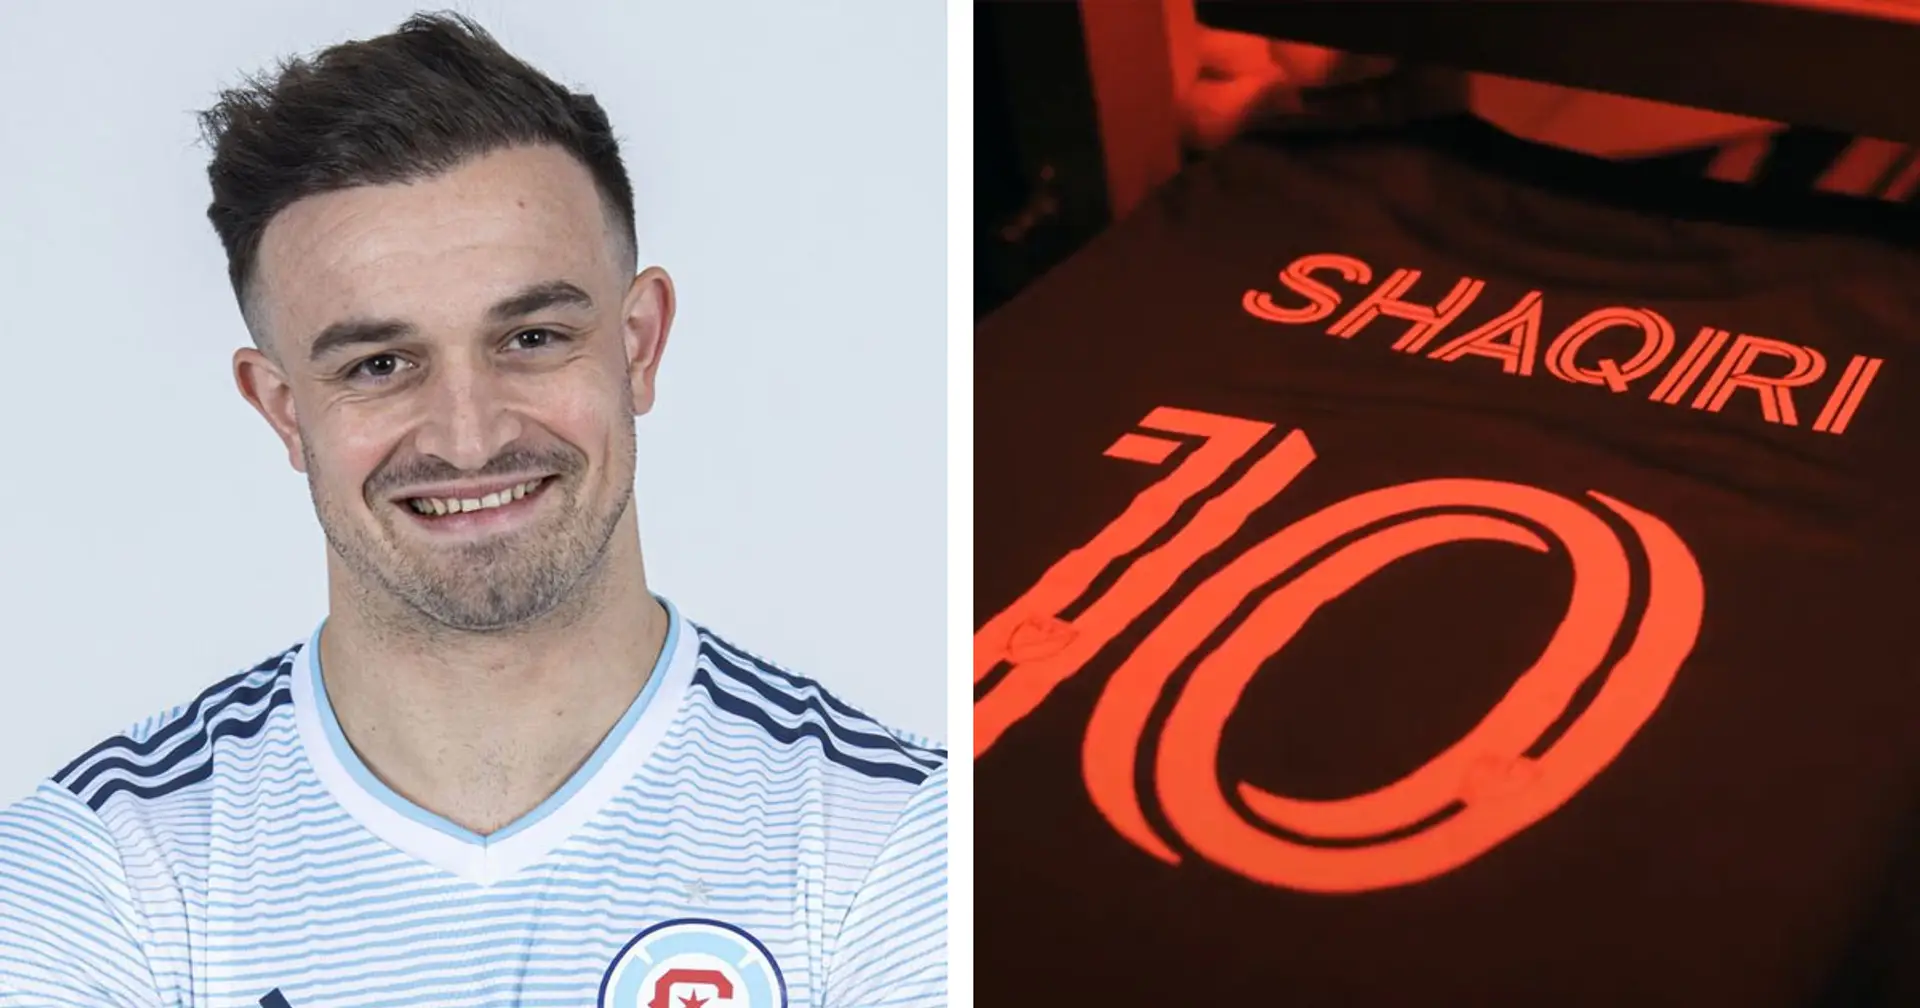 OFFIZIELL: Xherdan Shaqiri schließt sich dem MLS-Klub Chicago Fire an